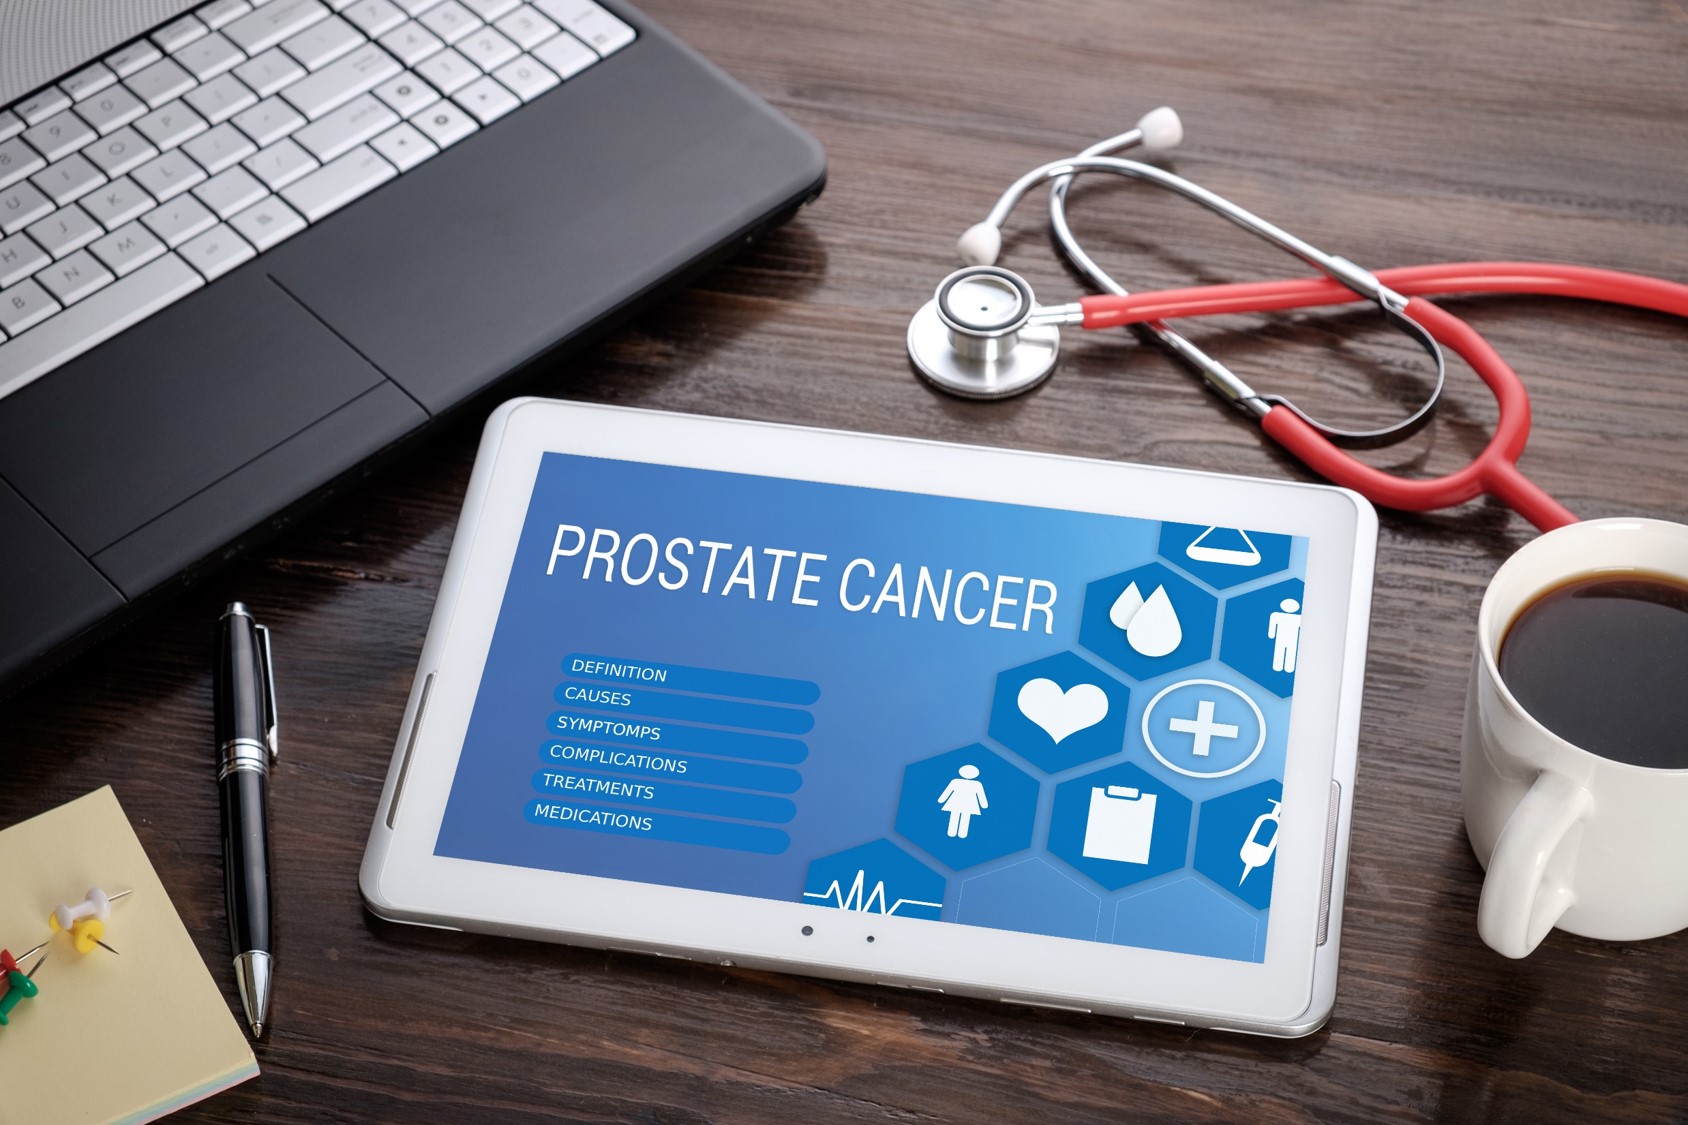 tratamento câncer de próstata